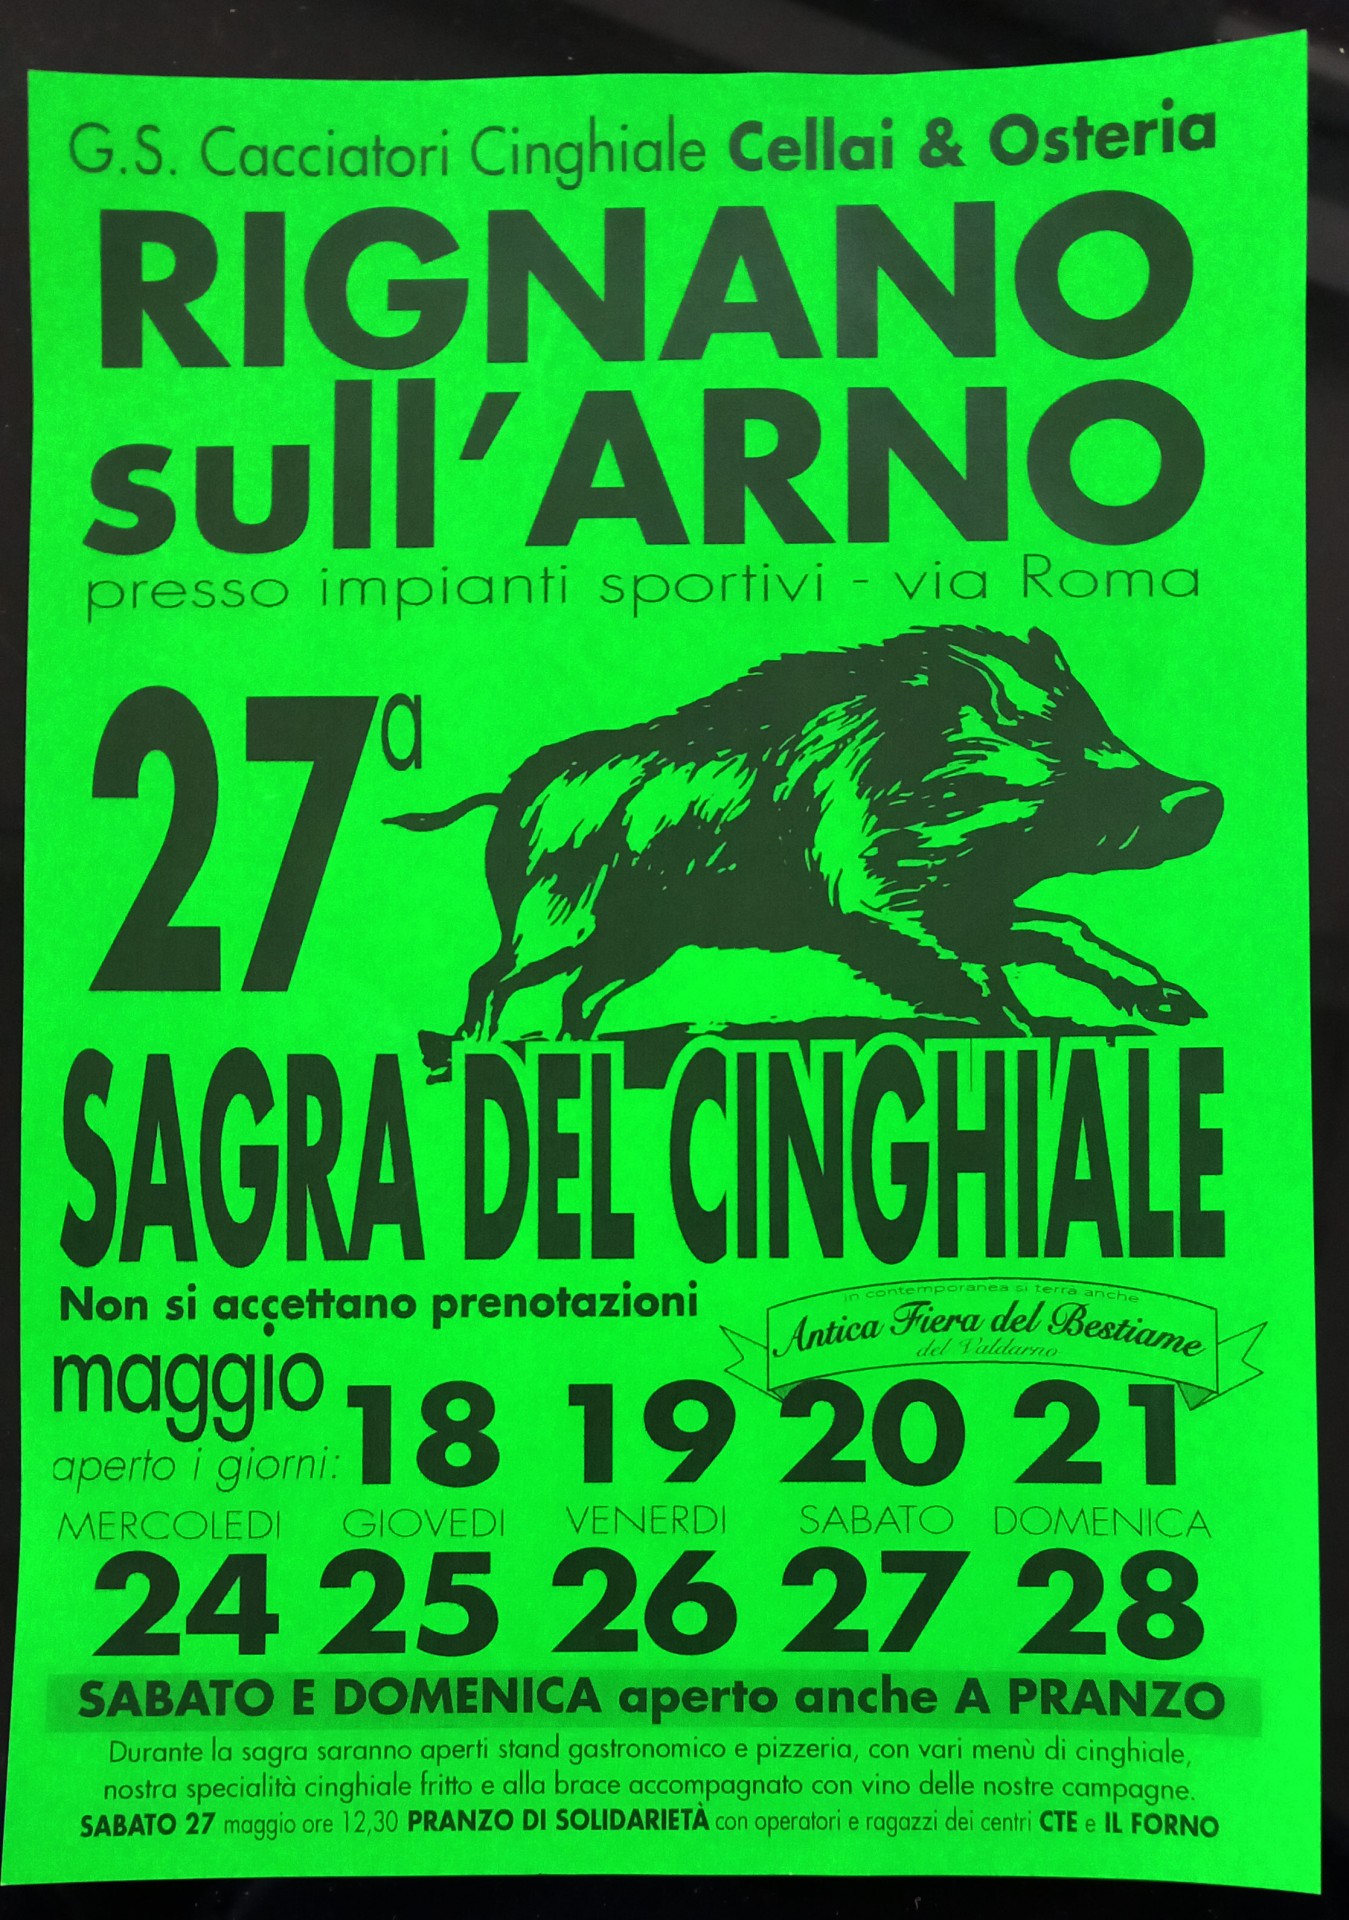 Locandina della Sagra del Cinghiale a Rignano sull'Arno, edizione del 2017